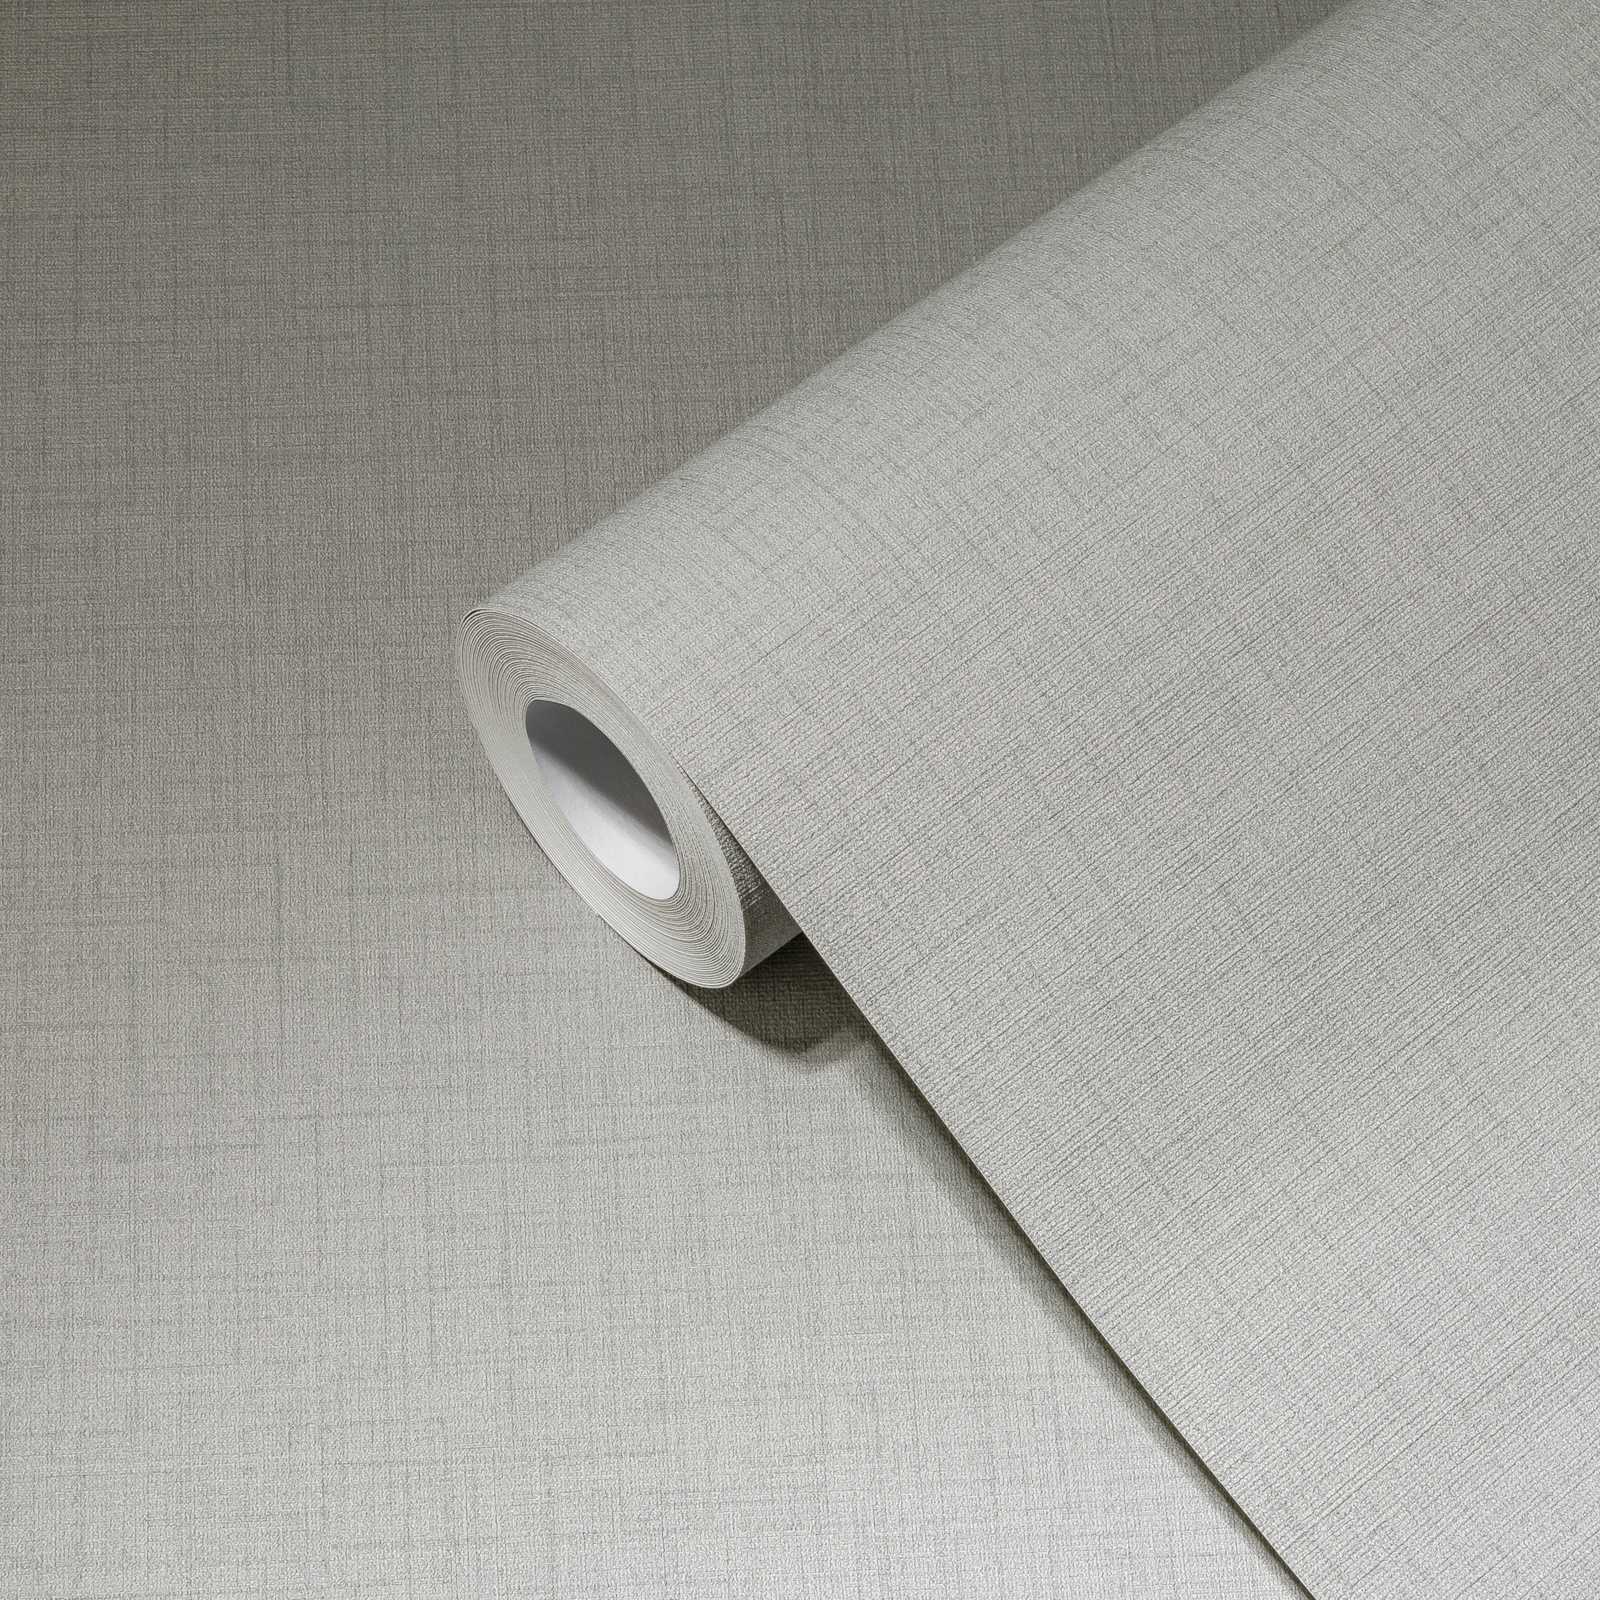             papier peint aspect lin intissé gris clair - gris
        